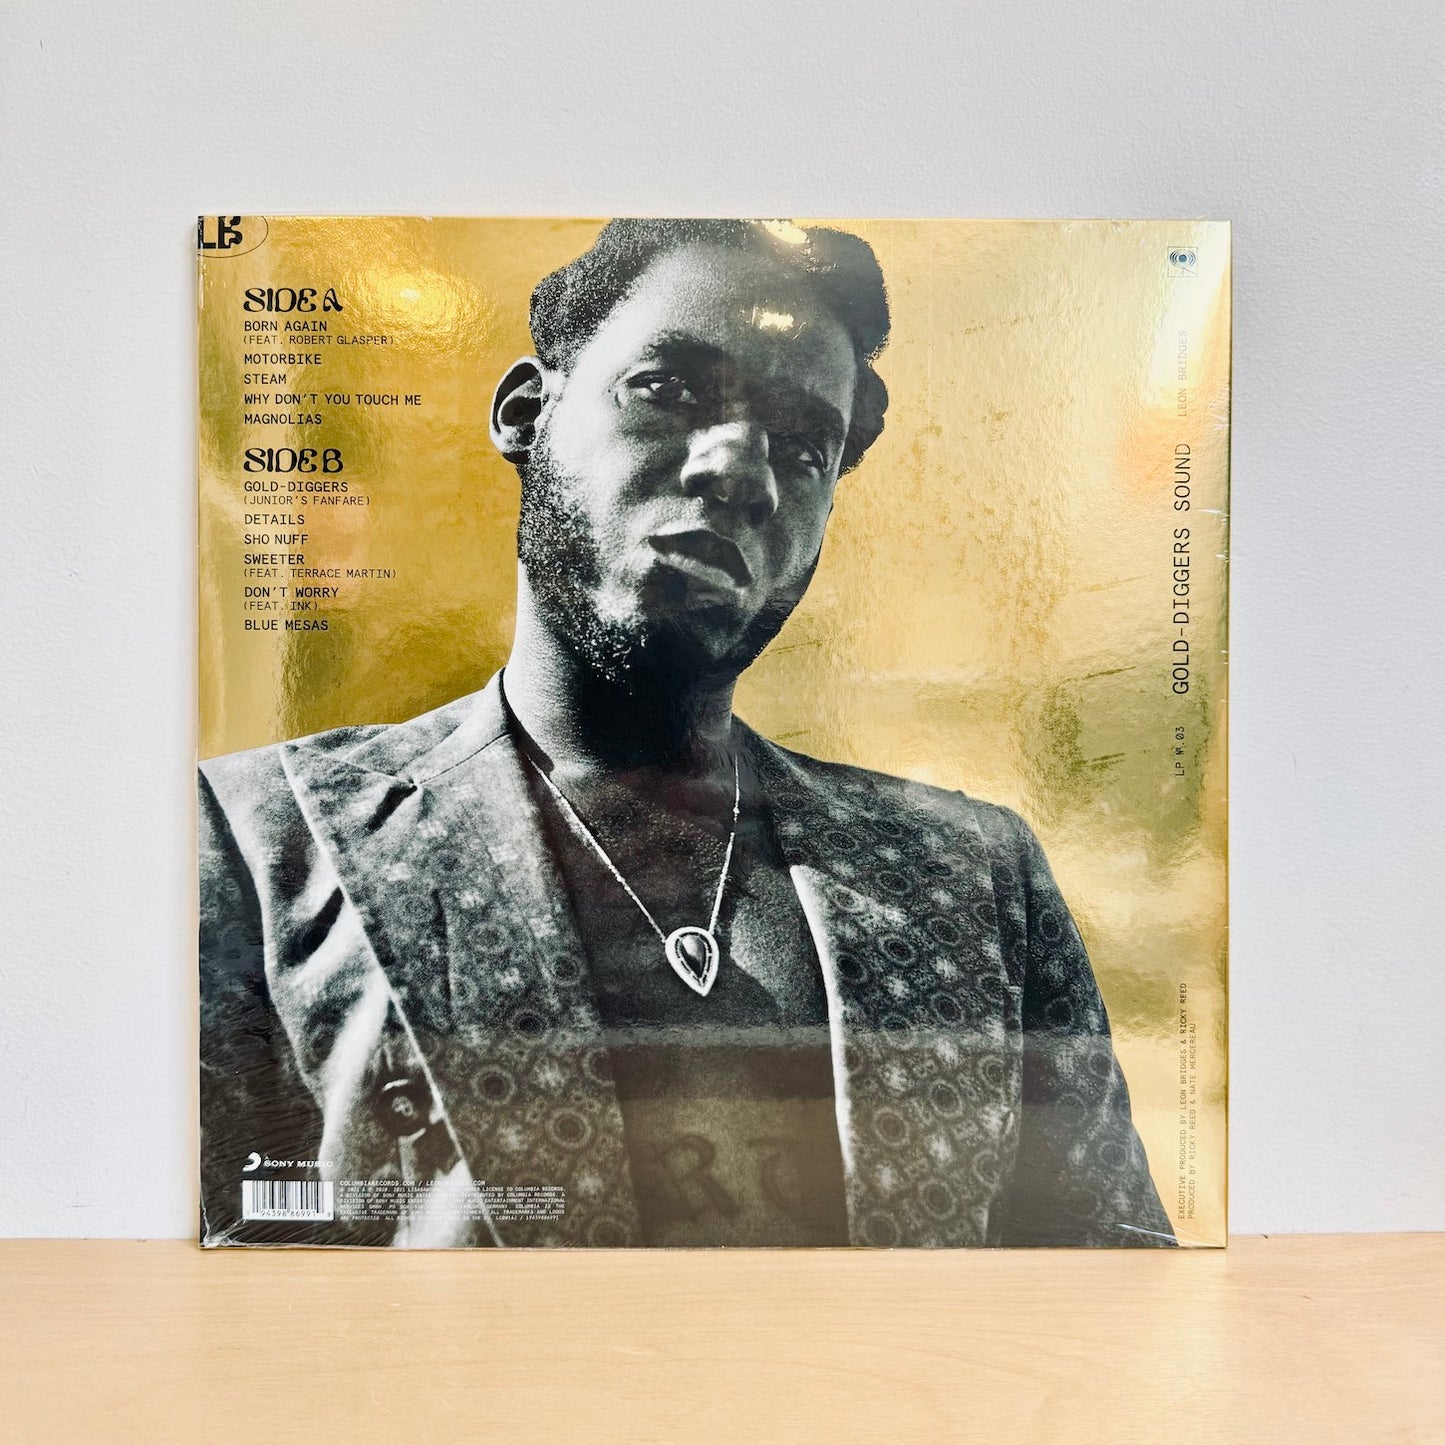 Leon Bridges - Gold-Diggers Sound. LP